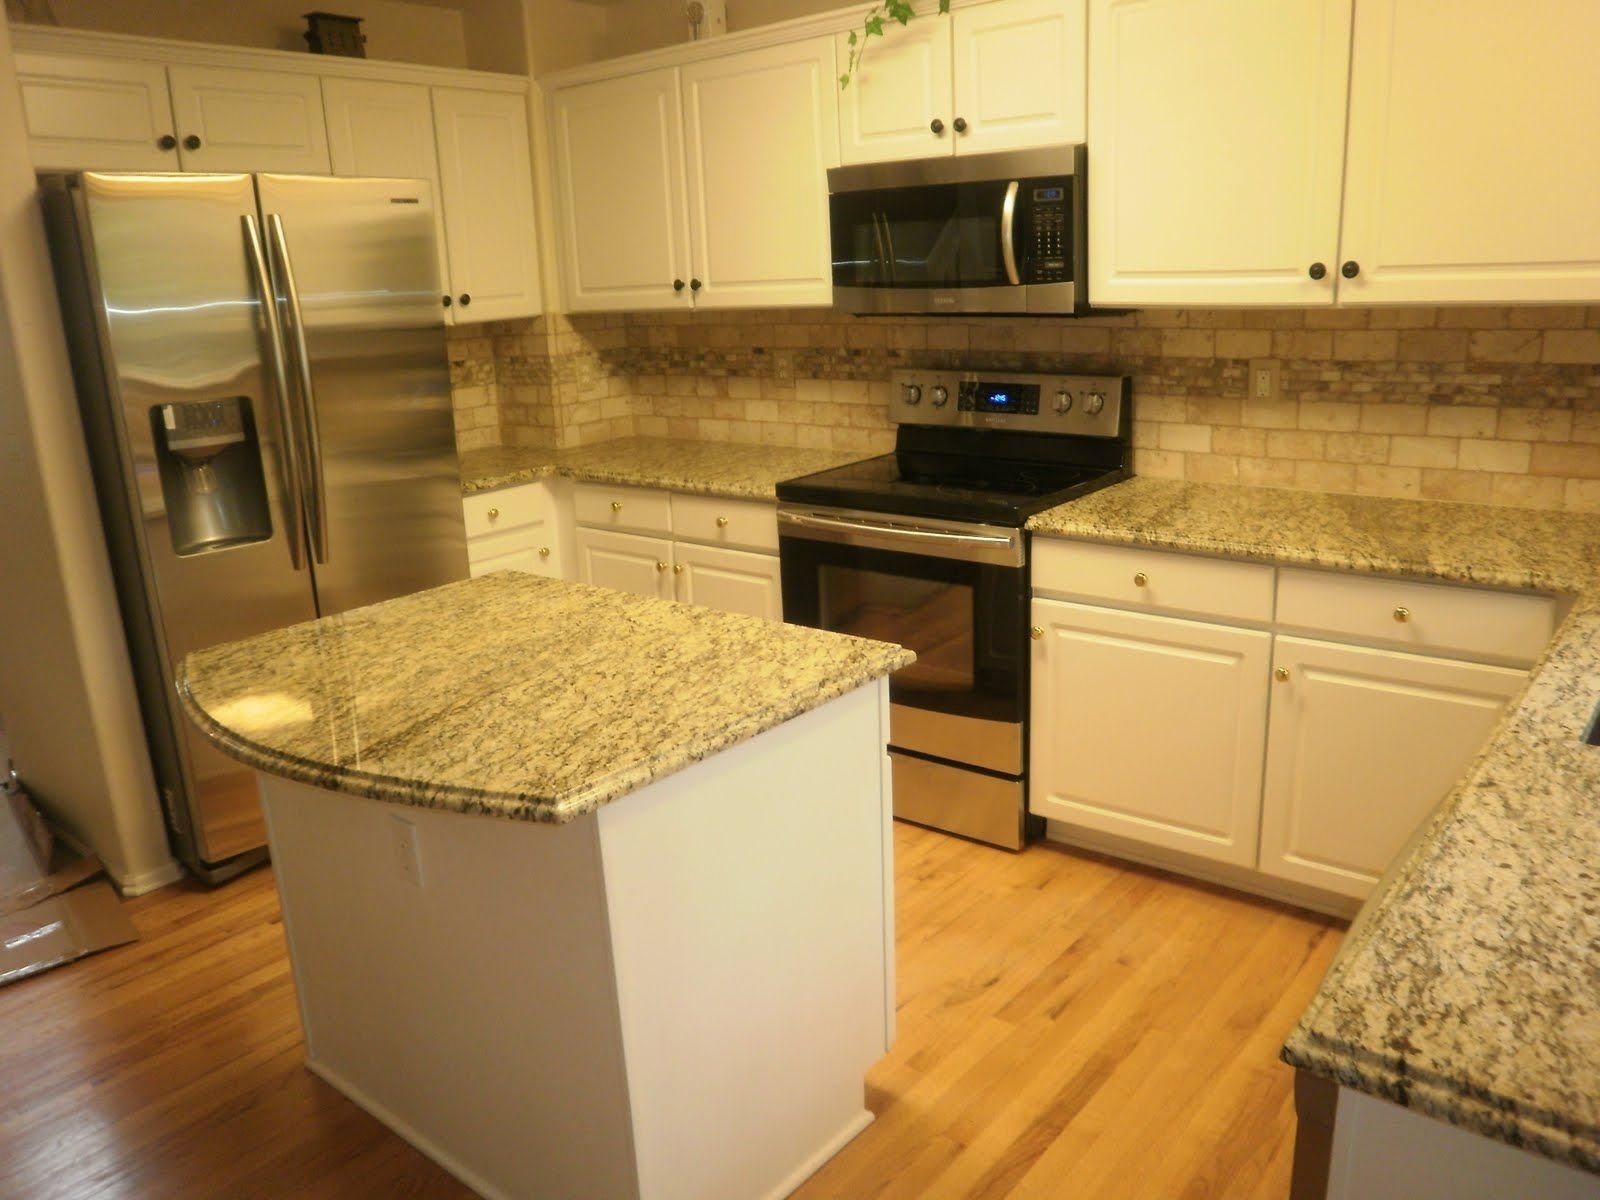 10 Stunning Santa Cecilia Granite Backsplash Ideas pictures of st cecilia granite with white cabinets kitchen 2022